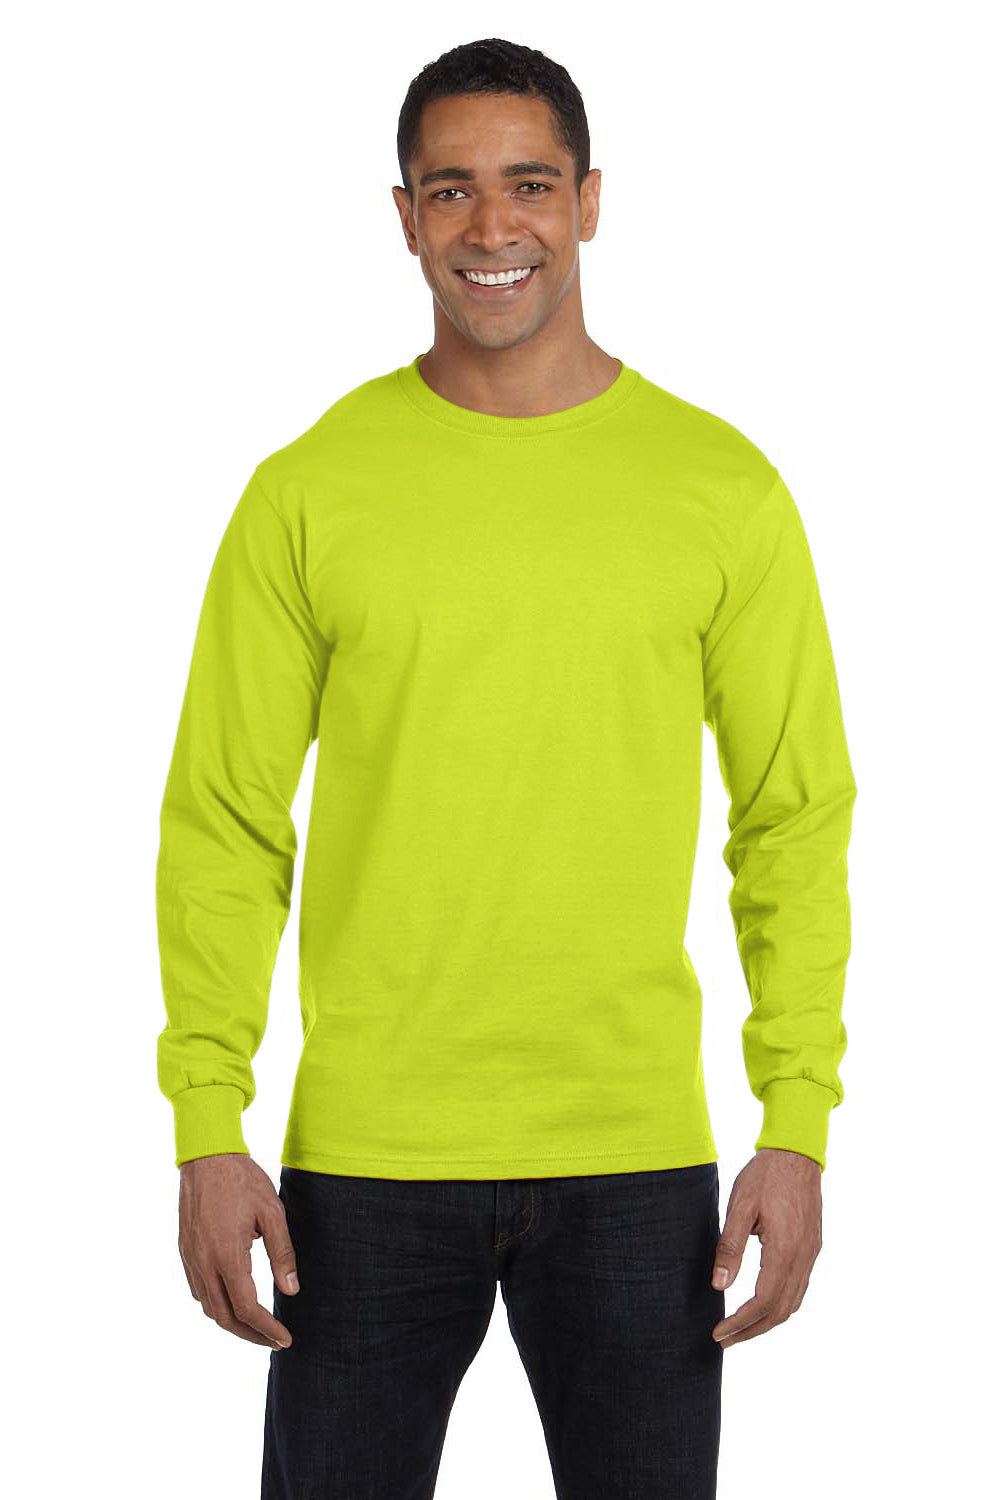 Gildan G840 Mens DryBlend Moisture Wicking Long Sleeve Crewneck T-Shirt Safety Green Front